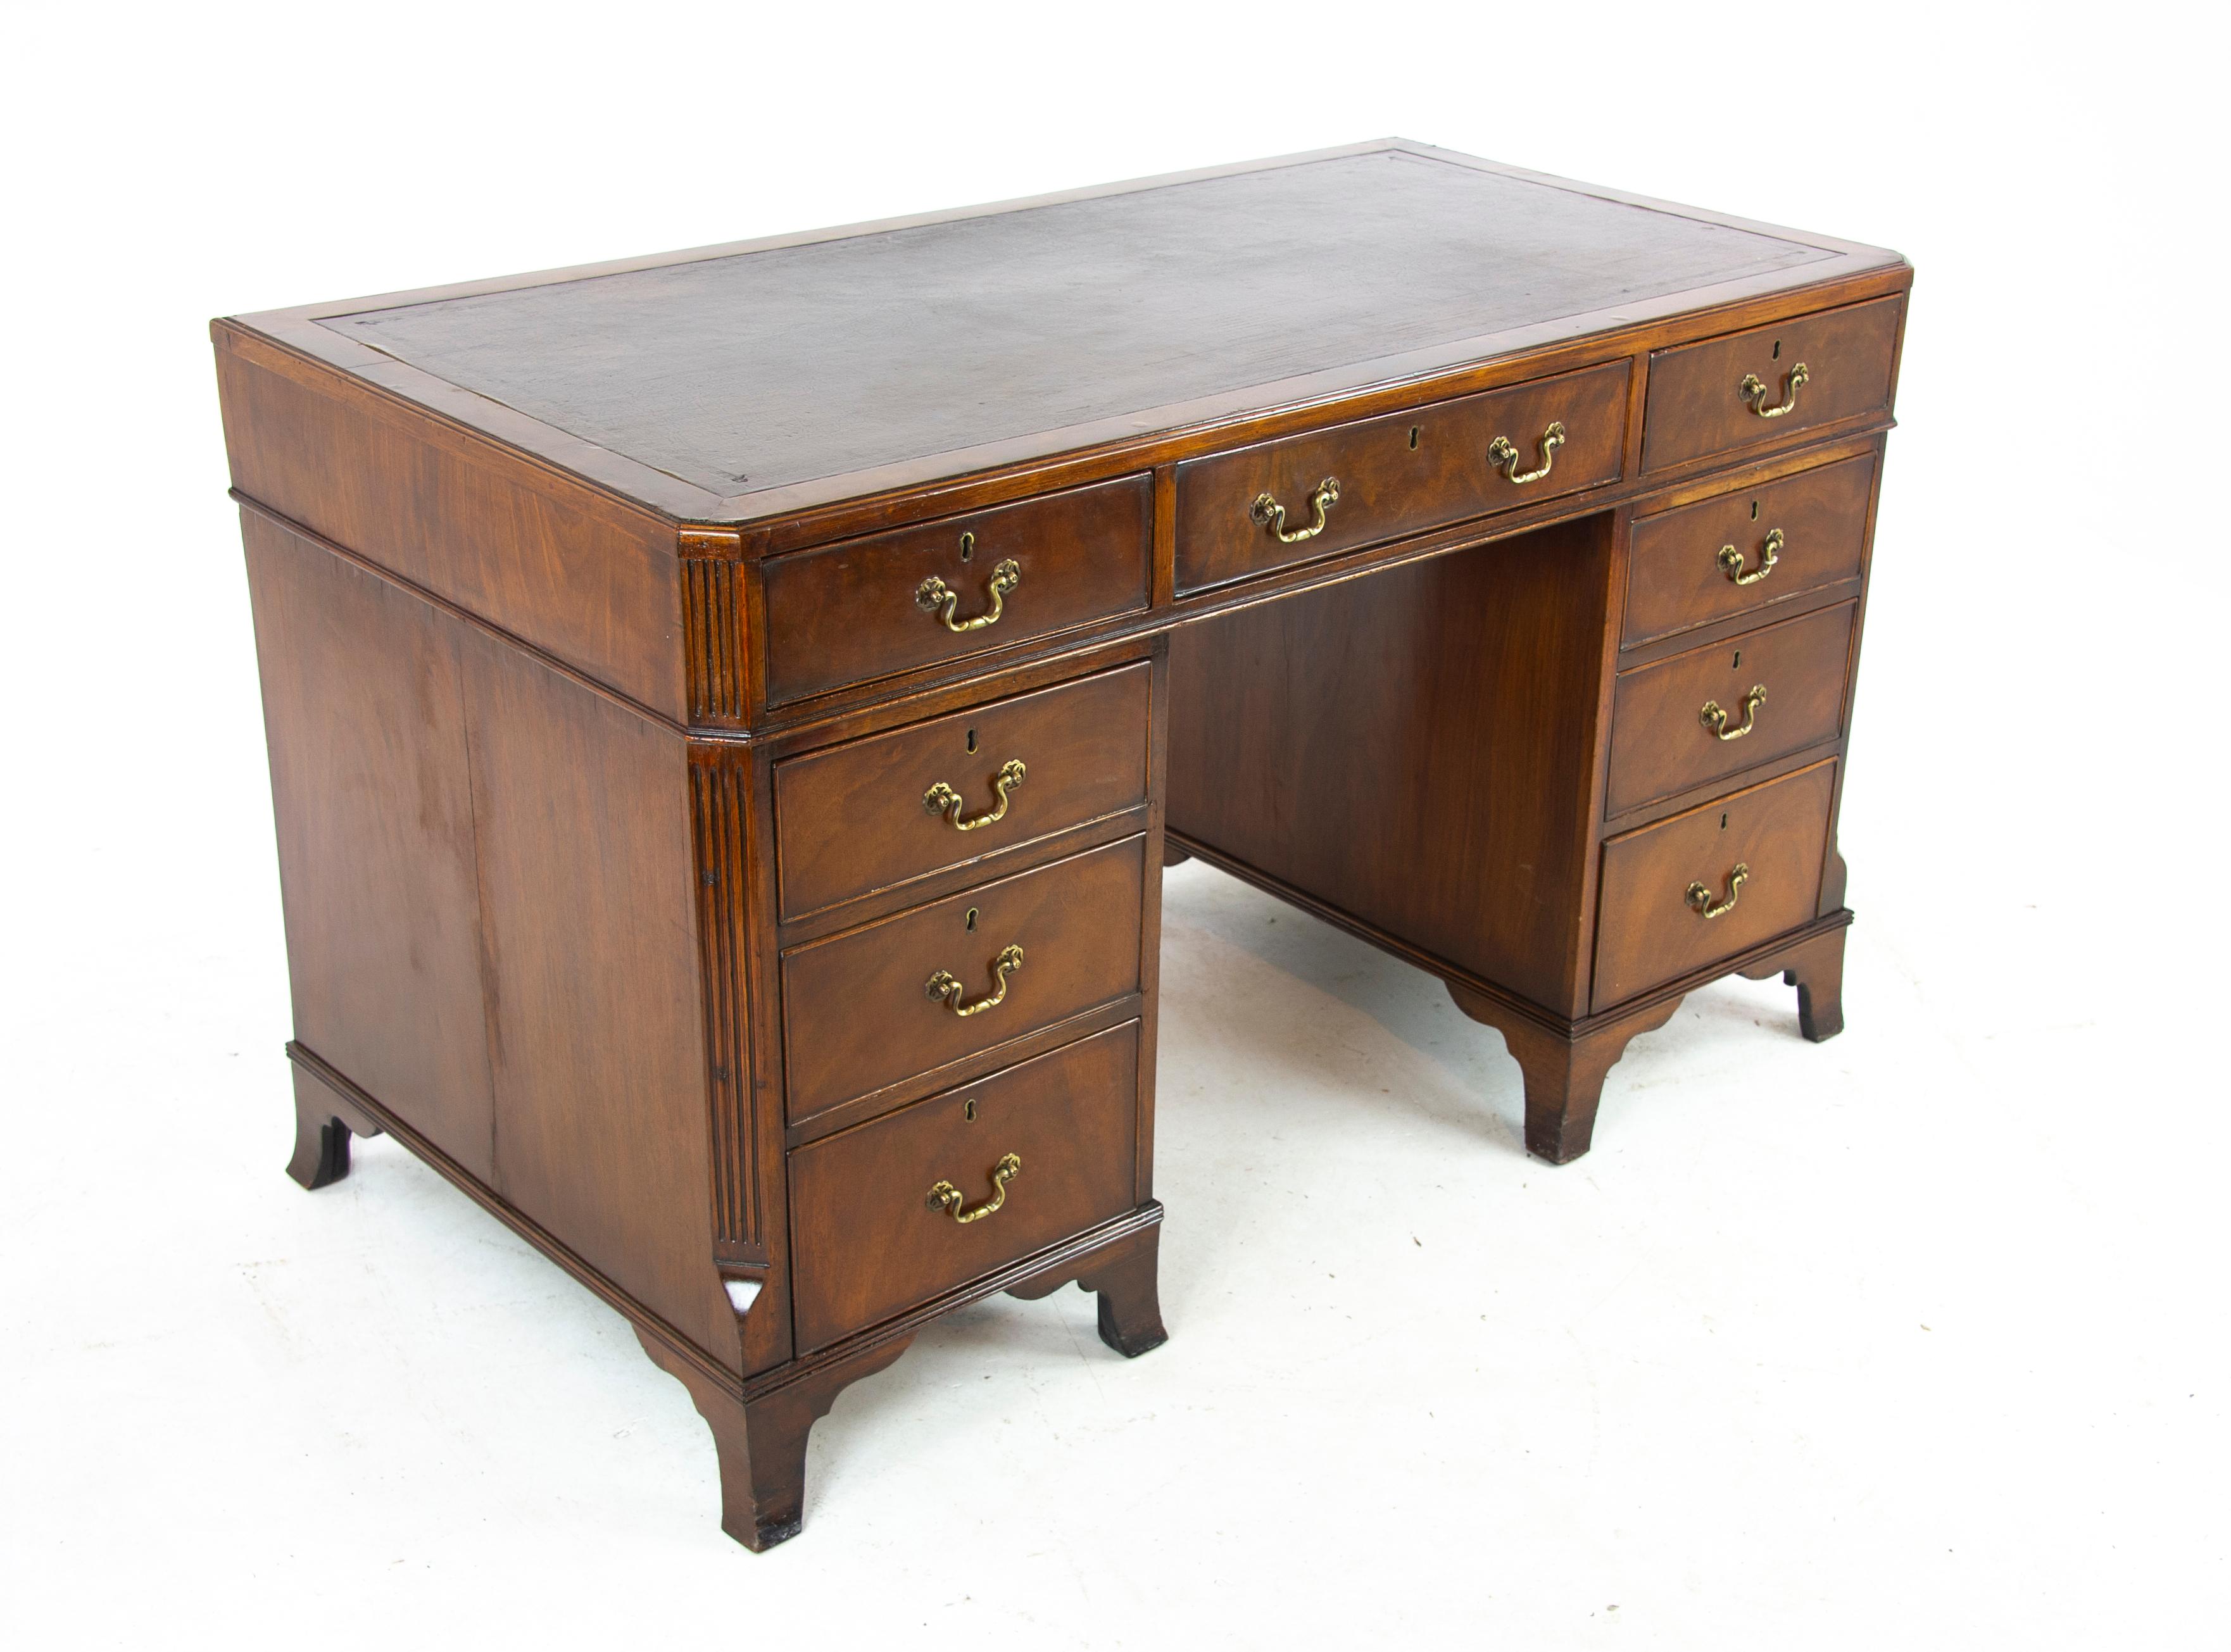 Scottish Double Pedestal Desk, Walnut Desk, Leather Top, Scotland, 1920, Antiques, B1283